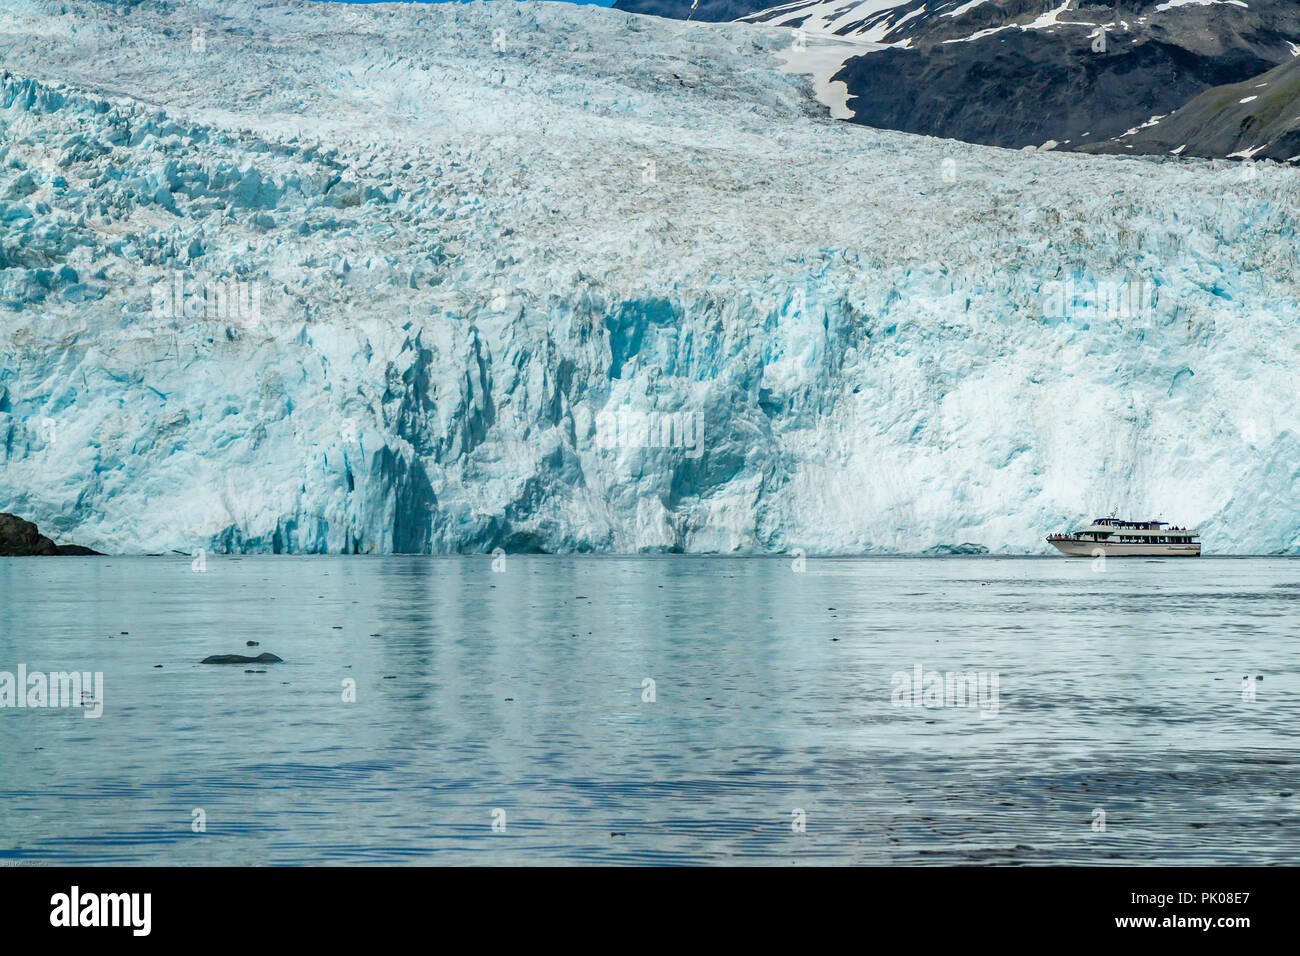 Harriman Aialik Gletscher, Bucht, Alaska, USA. Ein Katamaran wird durch die riesige blaue Eis Gletscher im Hintergrund in den Schatten gestellt. Stockfoto